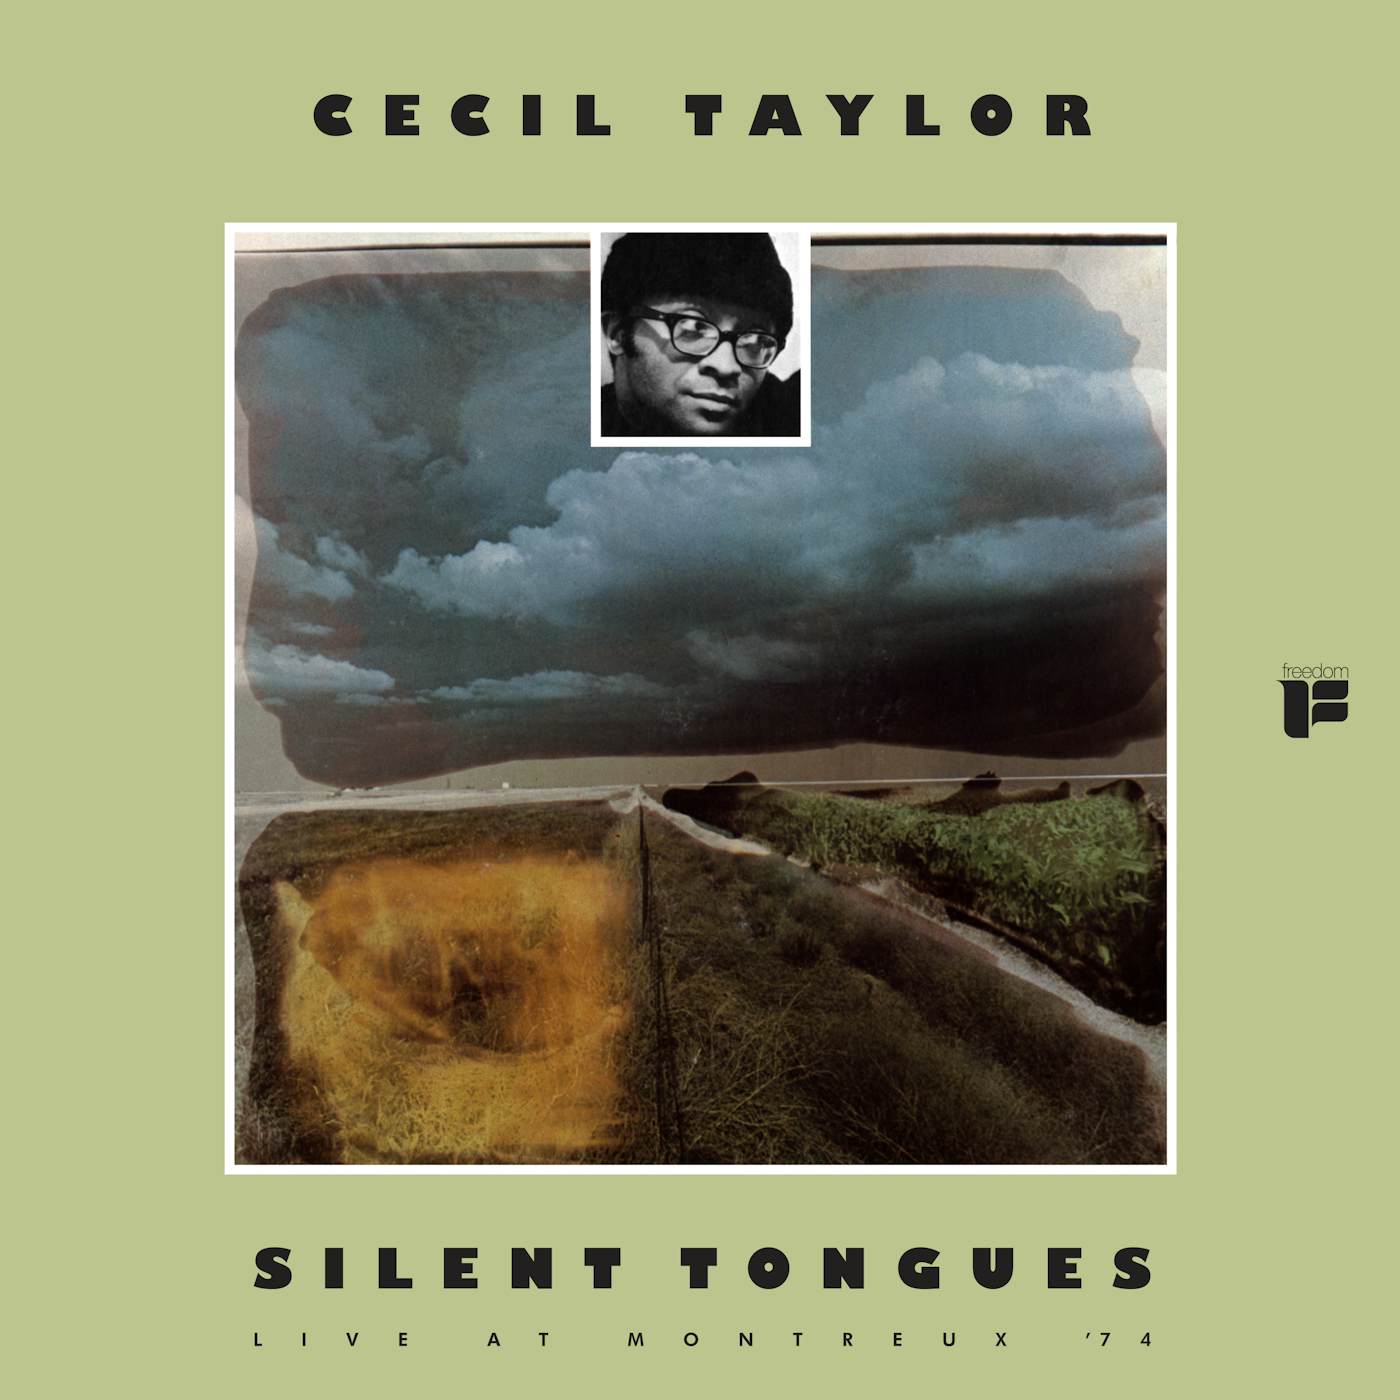 Cecil Taylor Silent Tongues Vinyl Record